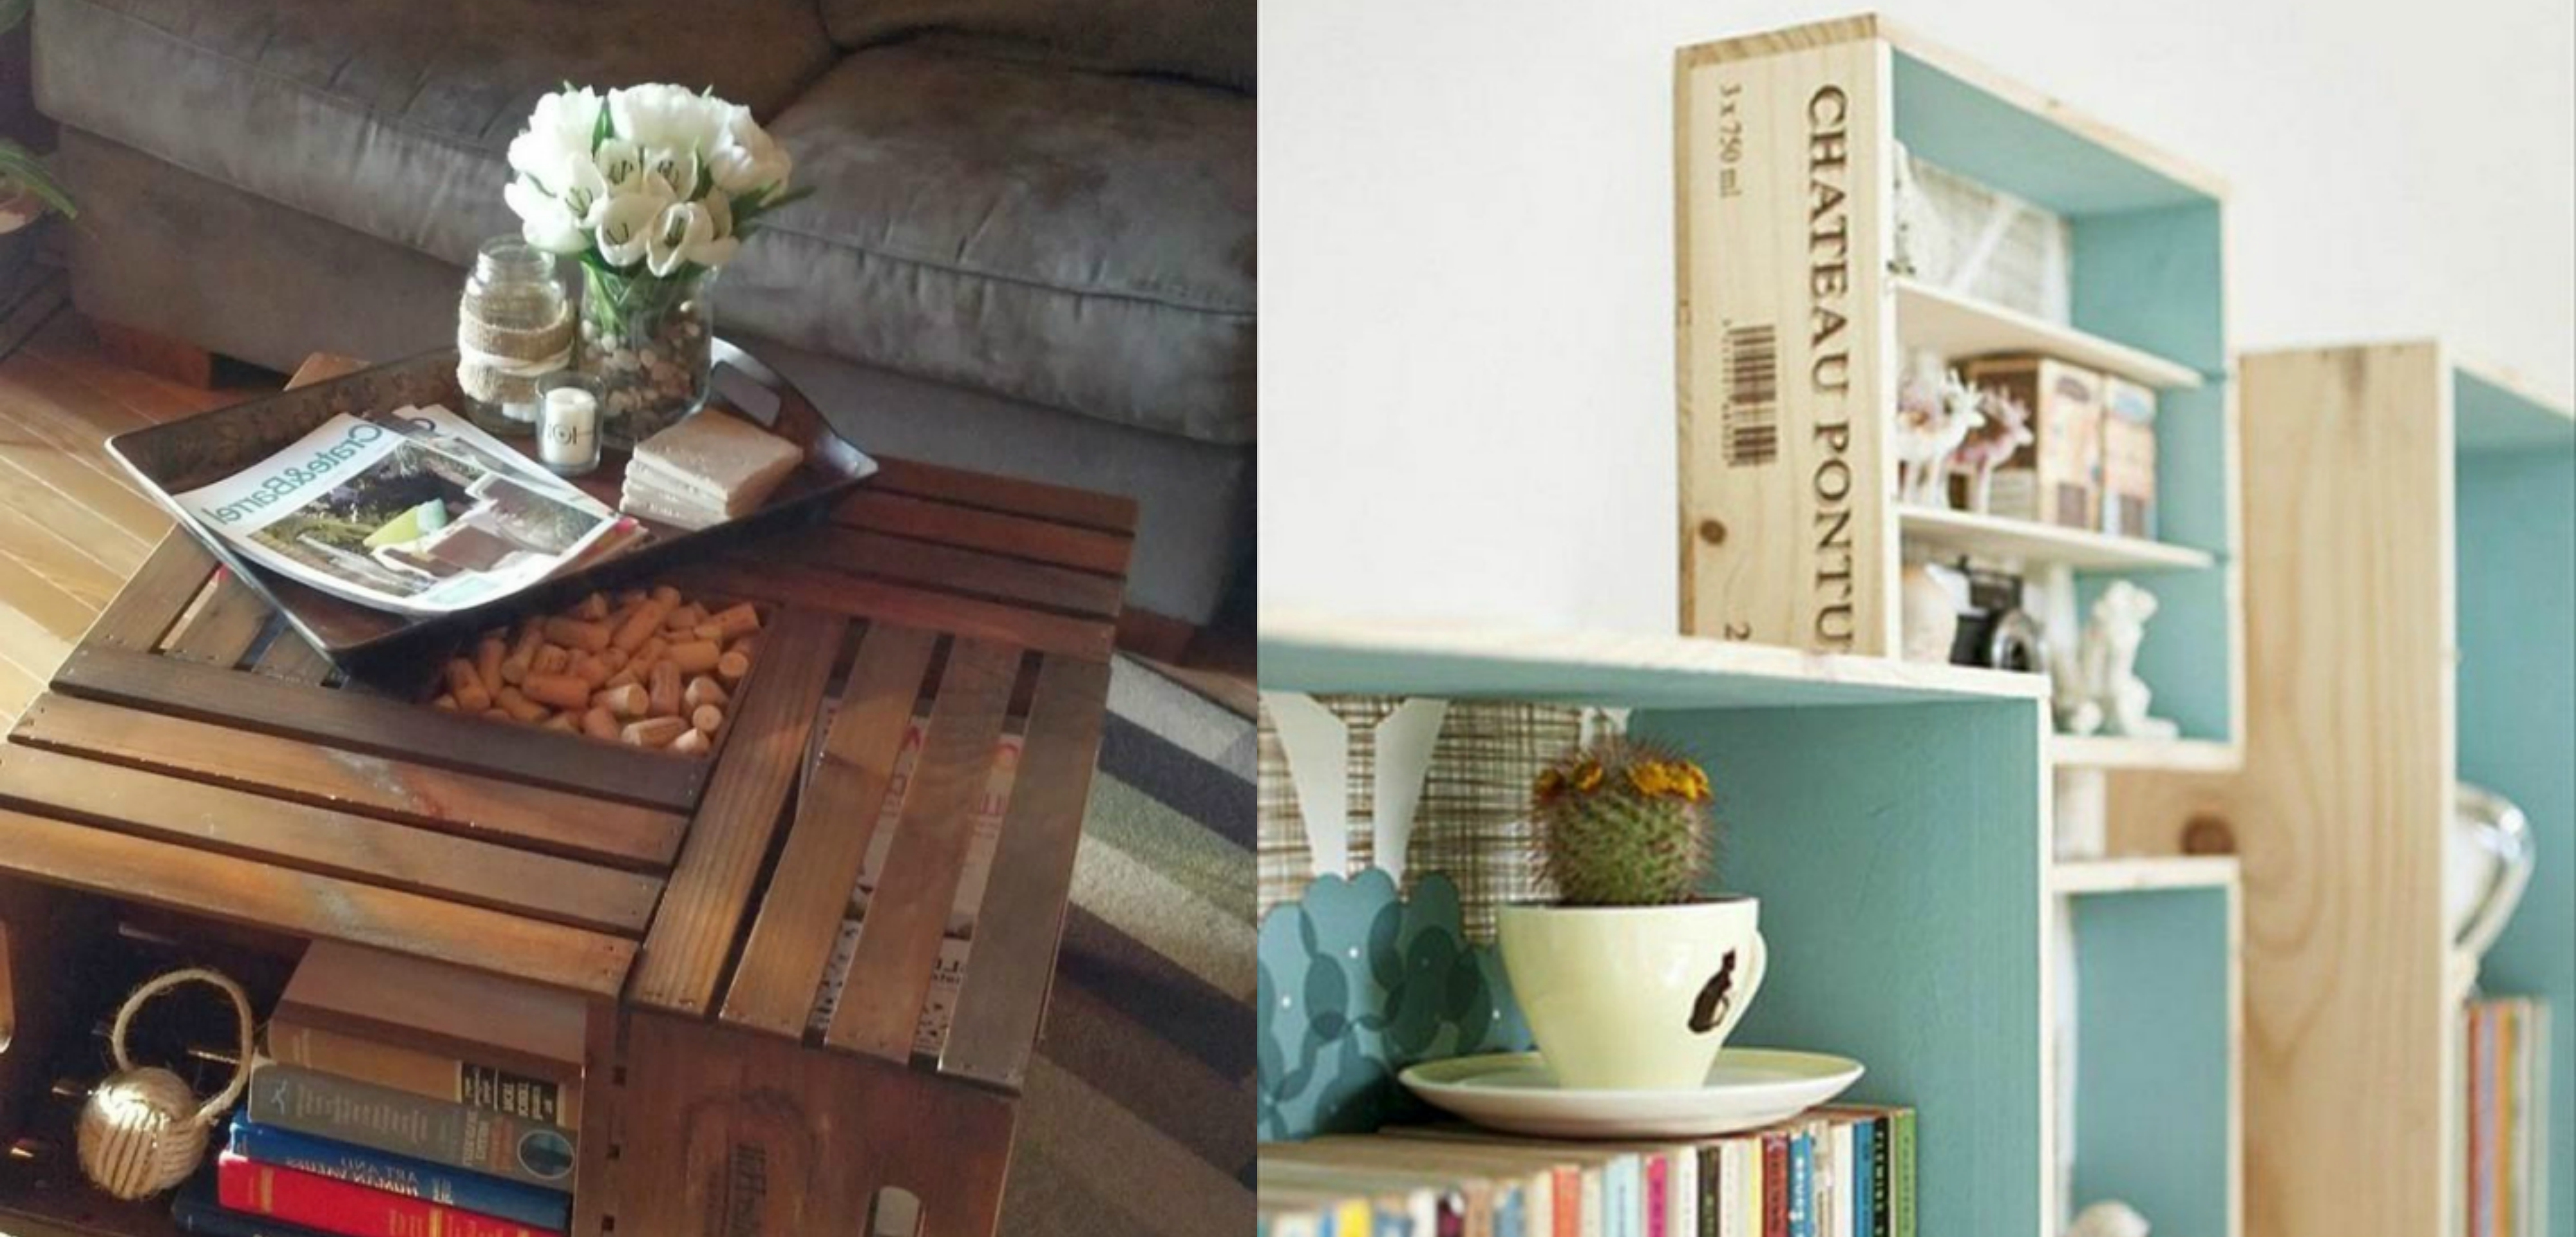 mesa y estantería hechos de cajas de fruta, como decorar cajas de madera, ideas inspiradoras para decorar el hogar